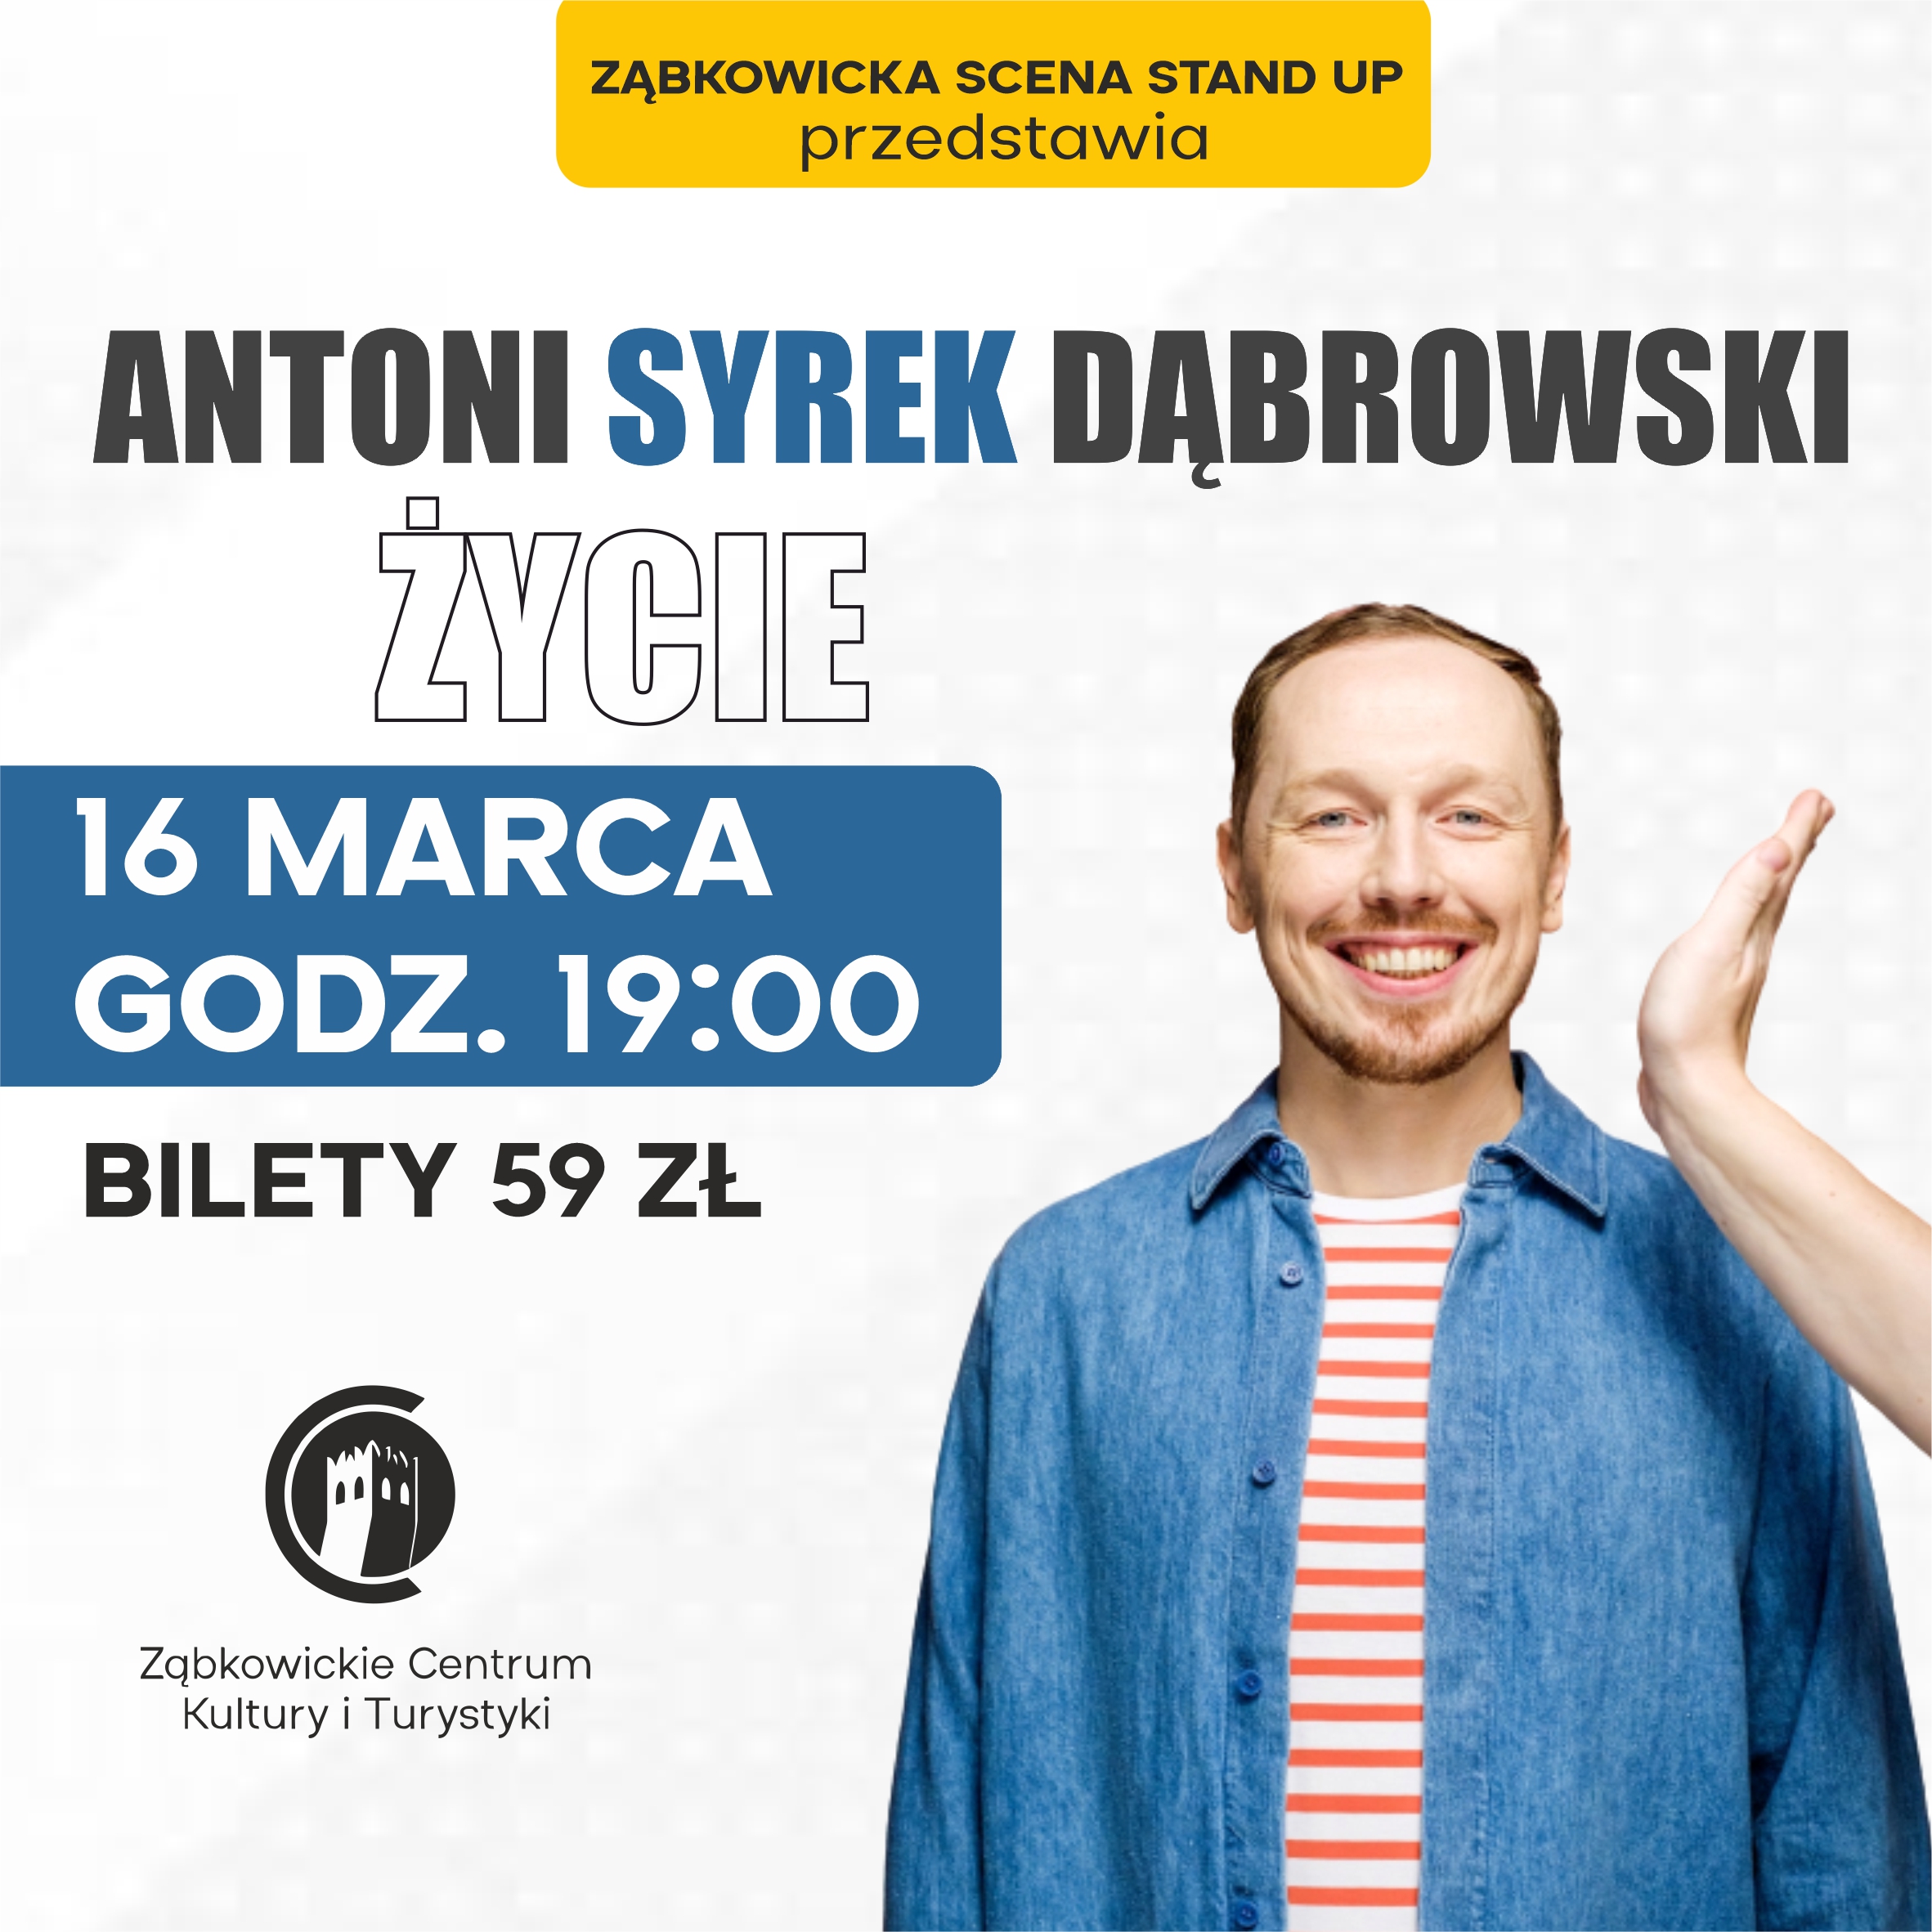 Plakat informujący o stand upie Antoniego Syrka Dąbrowskiego 16 marca o godzinie 19:00 w Ząbkowickim Centrum Kultury i Turystyki.